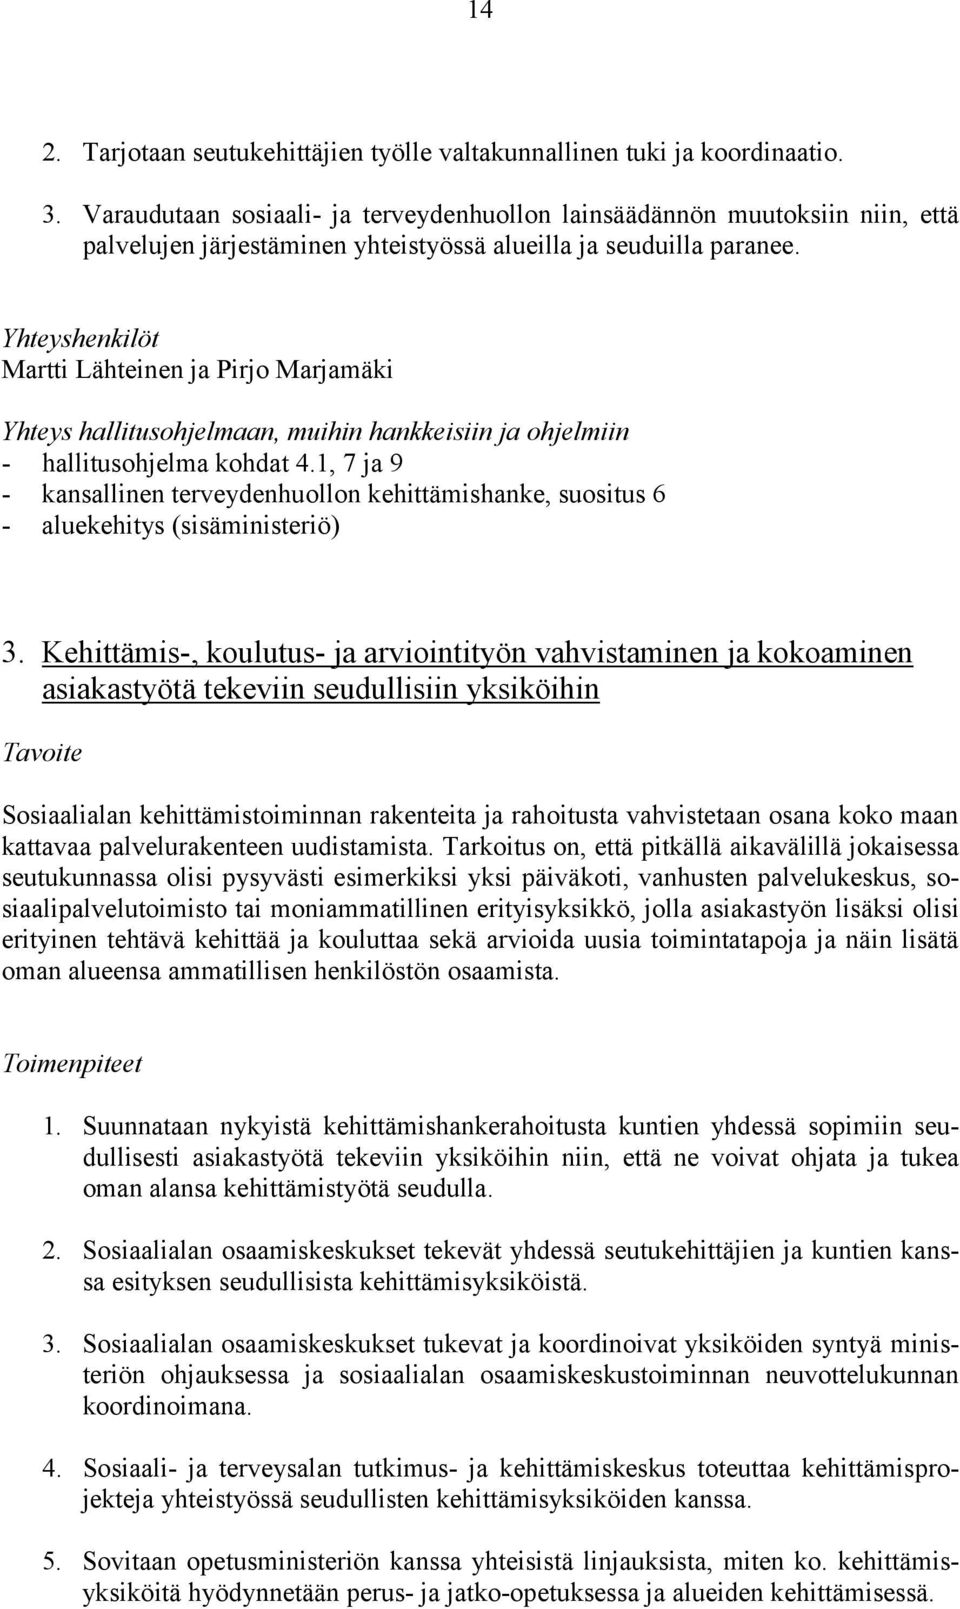 Yhteyshenkilöt Martti Lähteinen ja Pirjo Marjamäki - hallitusohjelma kohdat 4.1, 7 ja 9 - kansallinen terveydenhuollon kehittämishanke, suositus 6 - aluekehitys (sisäministeriö) 3.